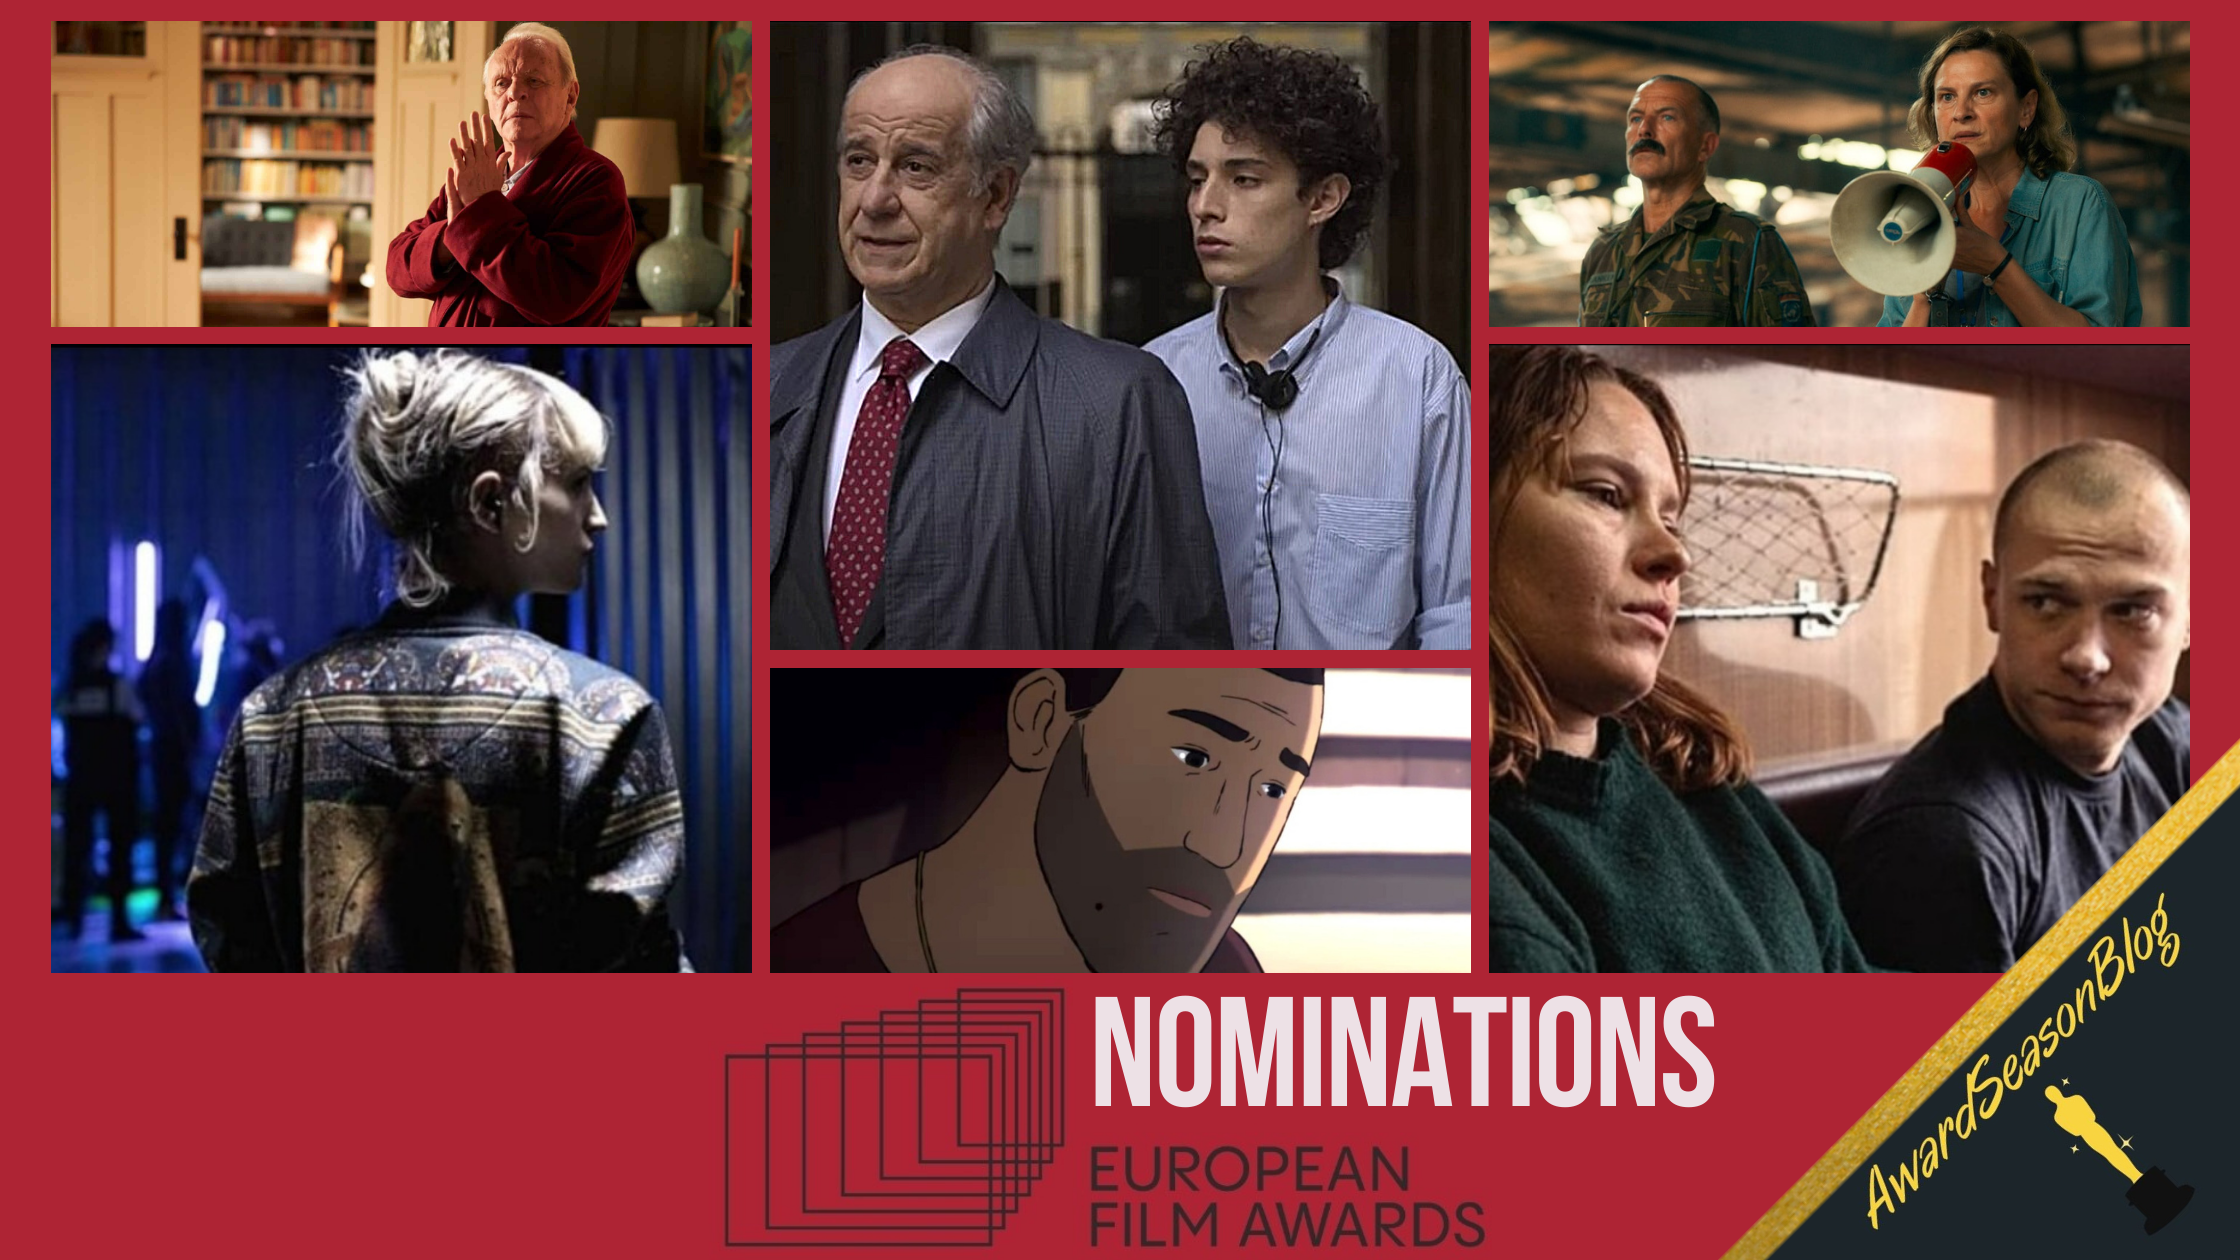 Nominations European Film Awards 2021: È stata la mano di Dio tra i migliori film europei dell'anno